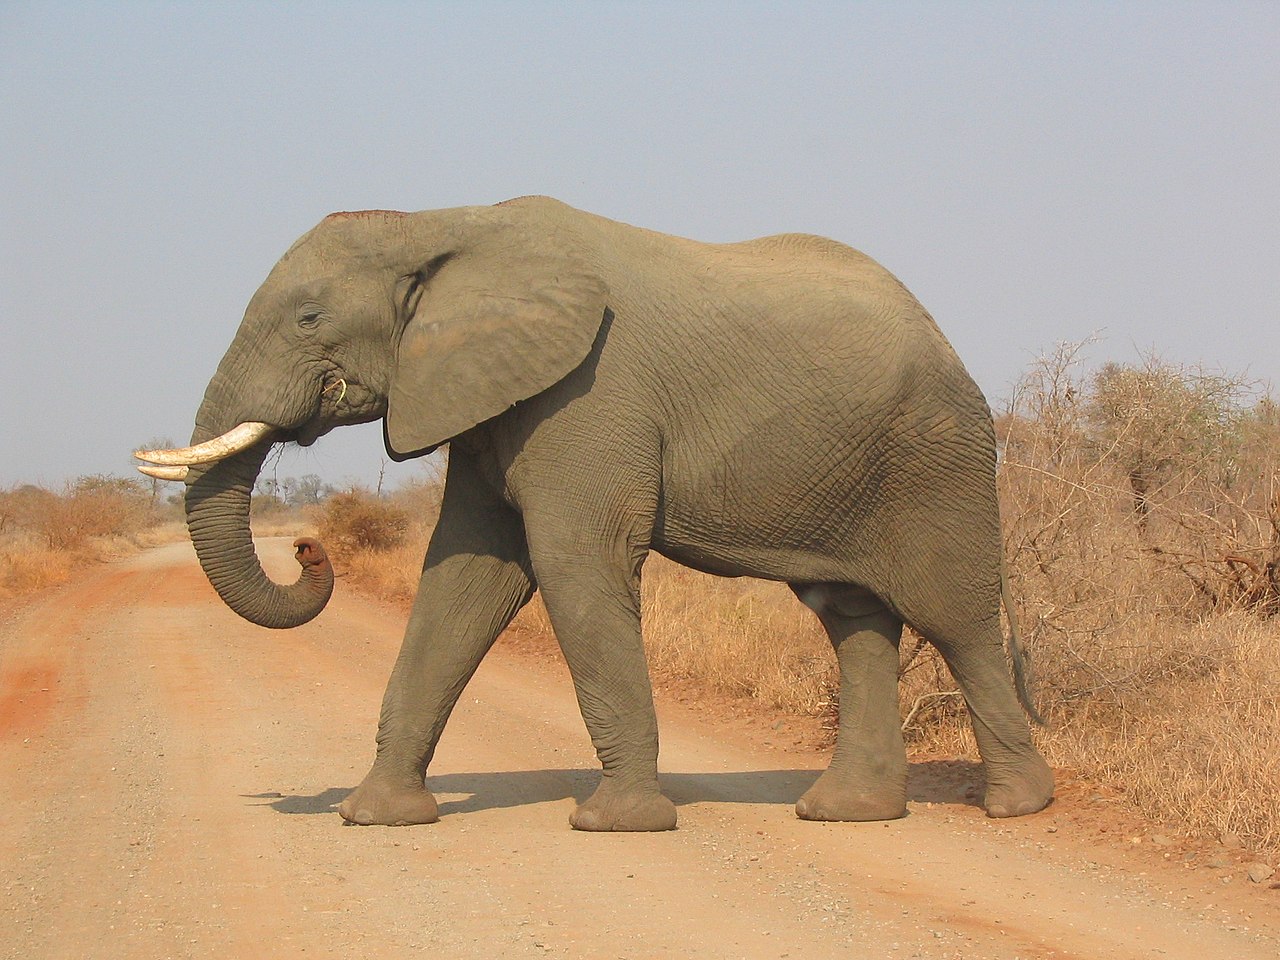 Elephant_side-view_Kruger.jpg